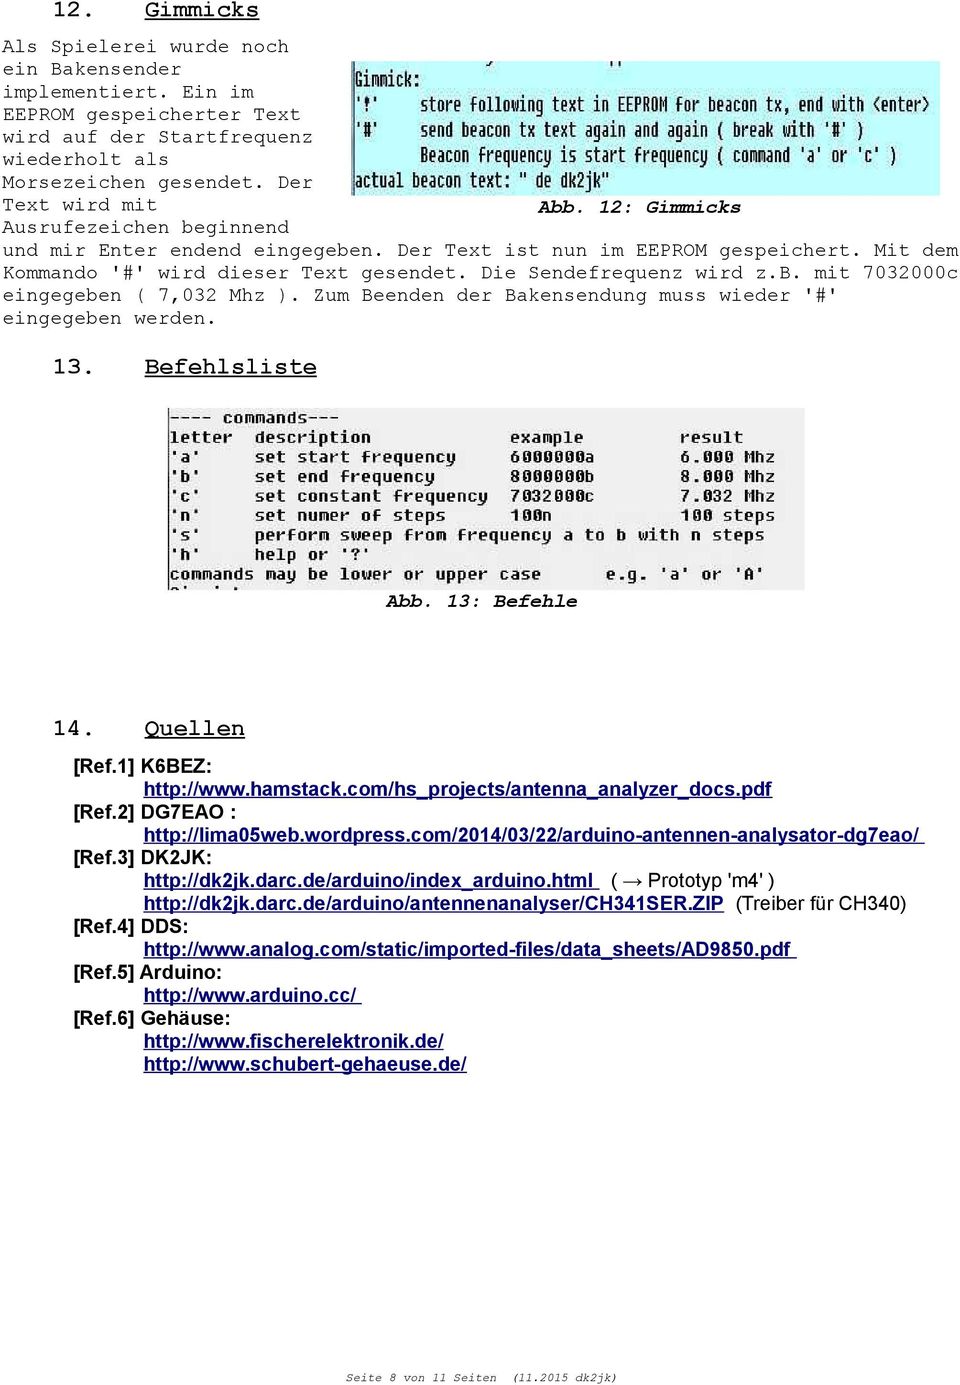 Zum Beenden der Bakensendung muss wieder '#' eingegeben werden. 13. Befehlsliste Abb. 13: Befehle 14. Quellen [Ref.1] K6BEZ: http://www.hamstack.com/hs_projects/antenna_analyzer_docs.pdf [Ref.